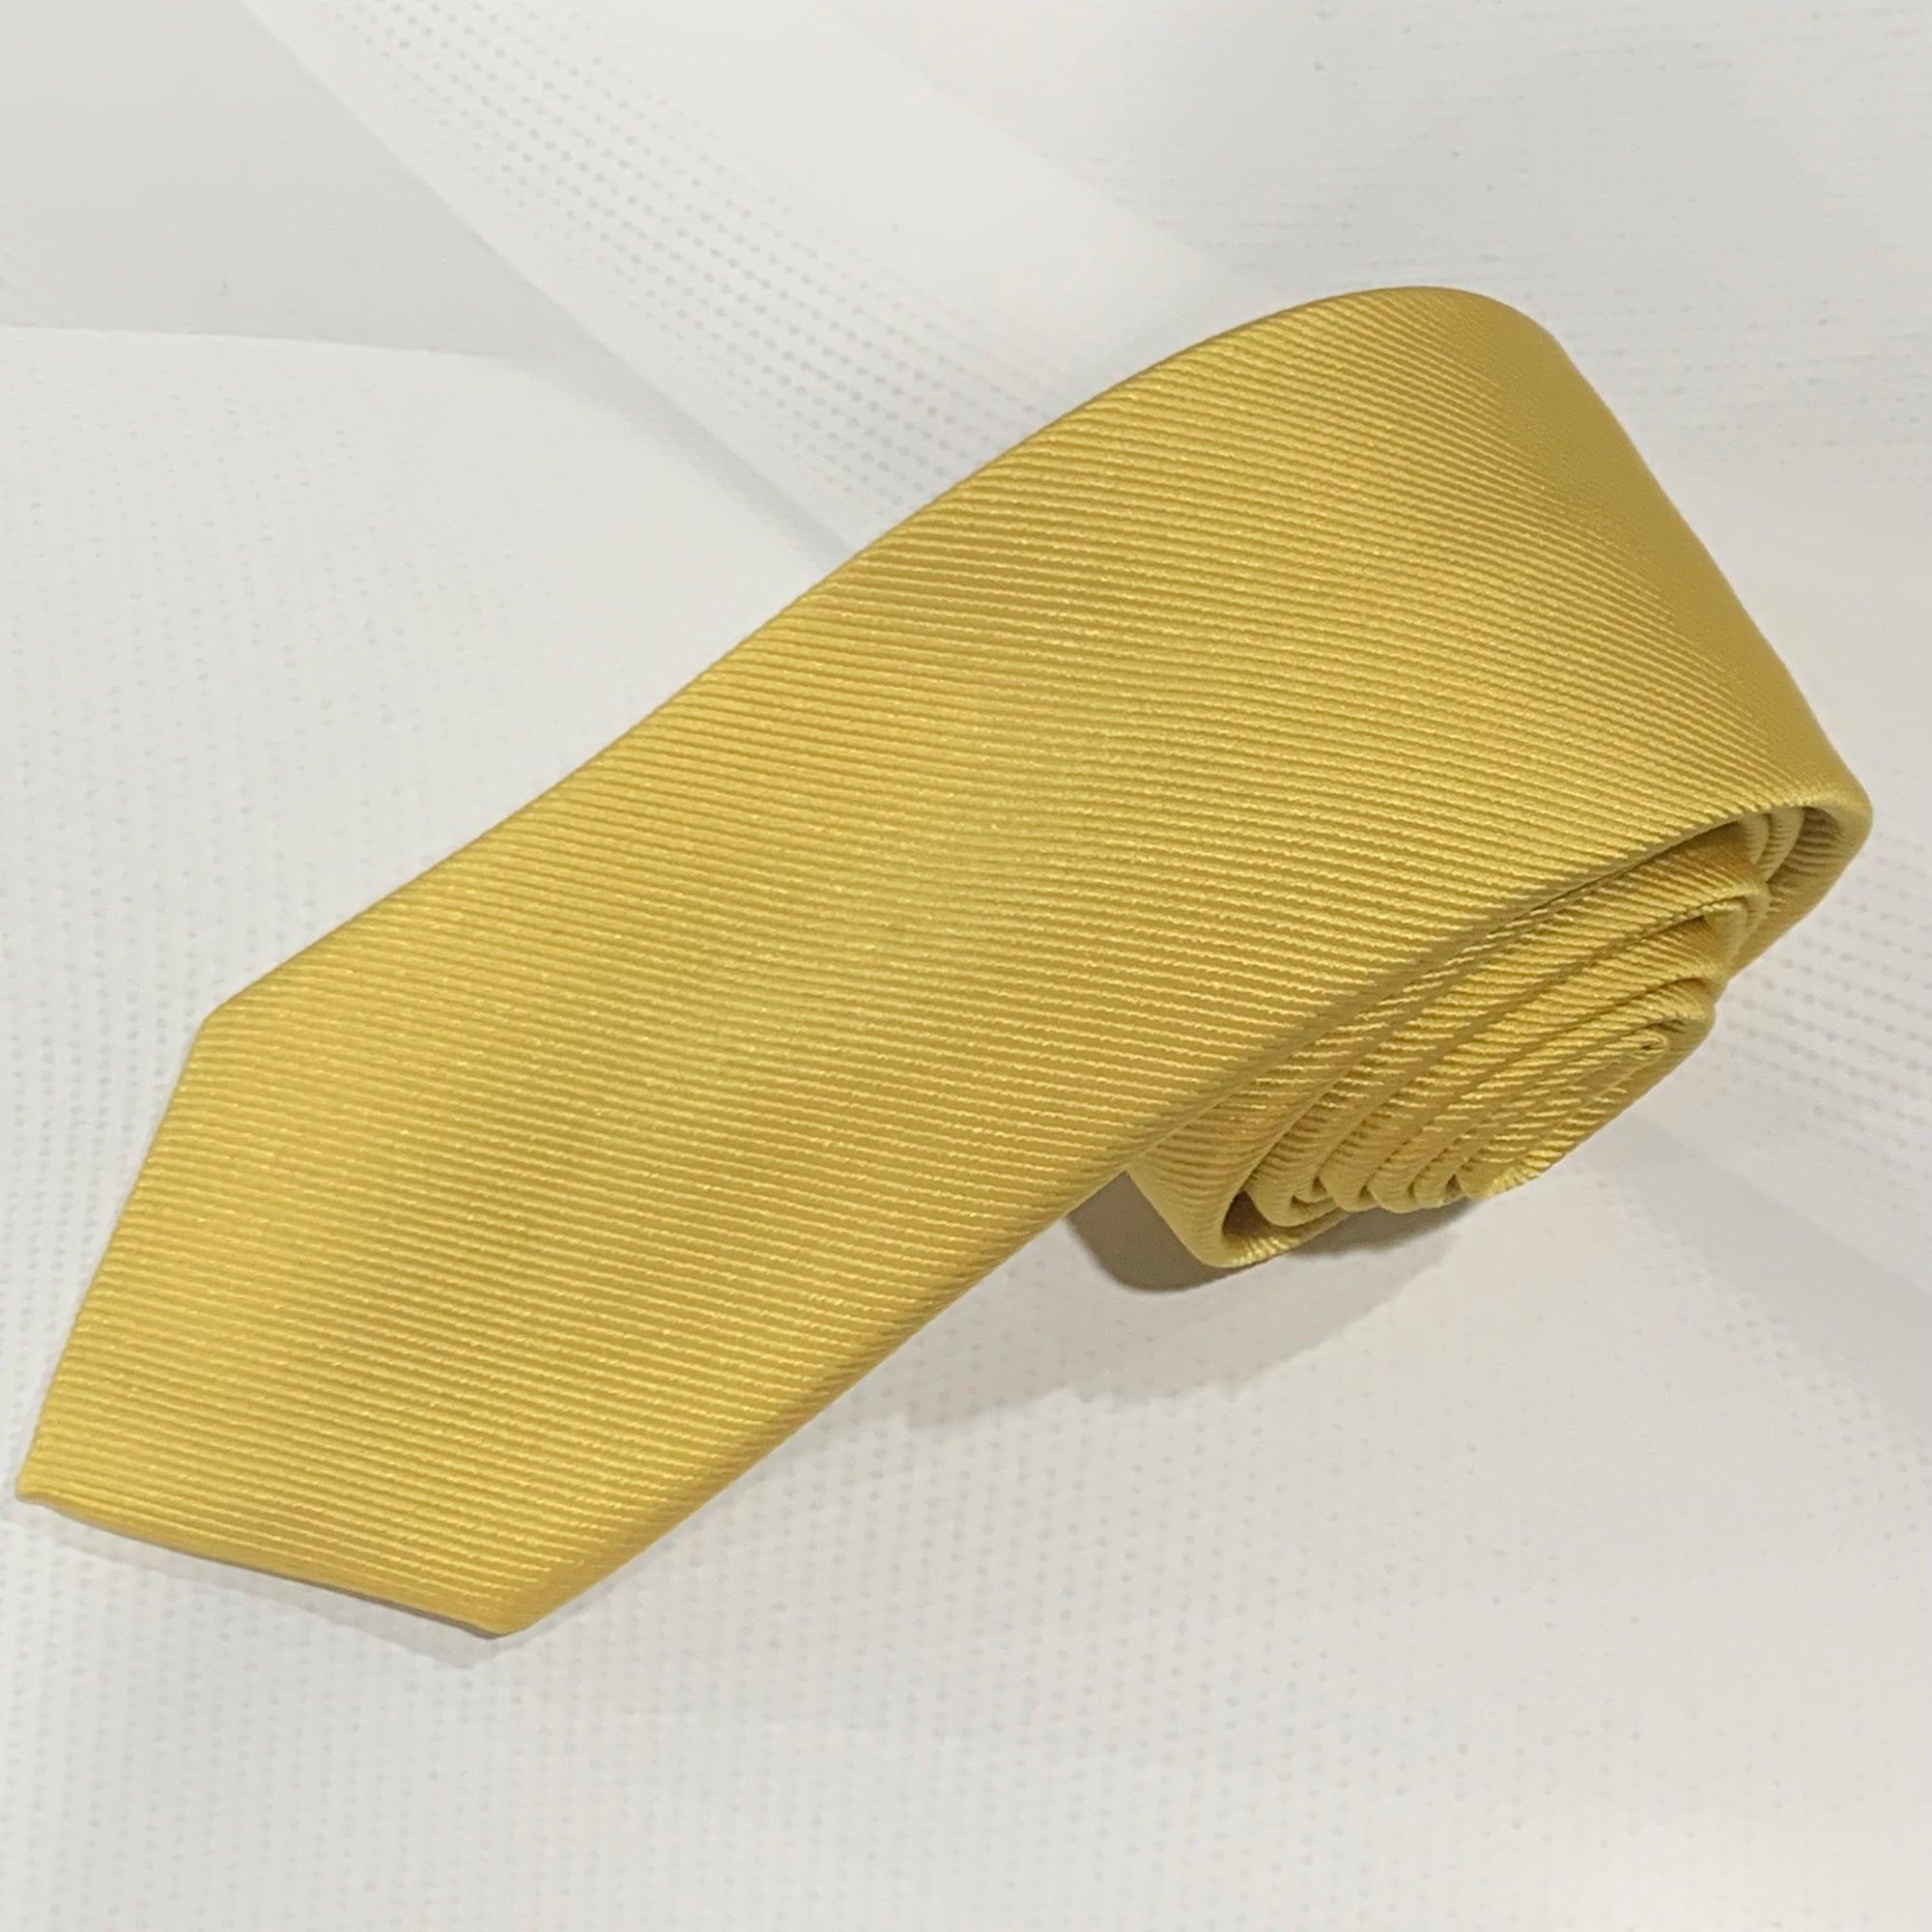 Copy of X18395-3 Silk Tie - Harrys for Menswear